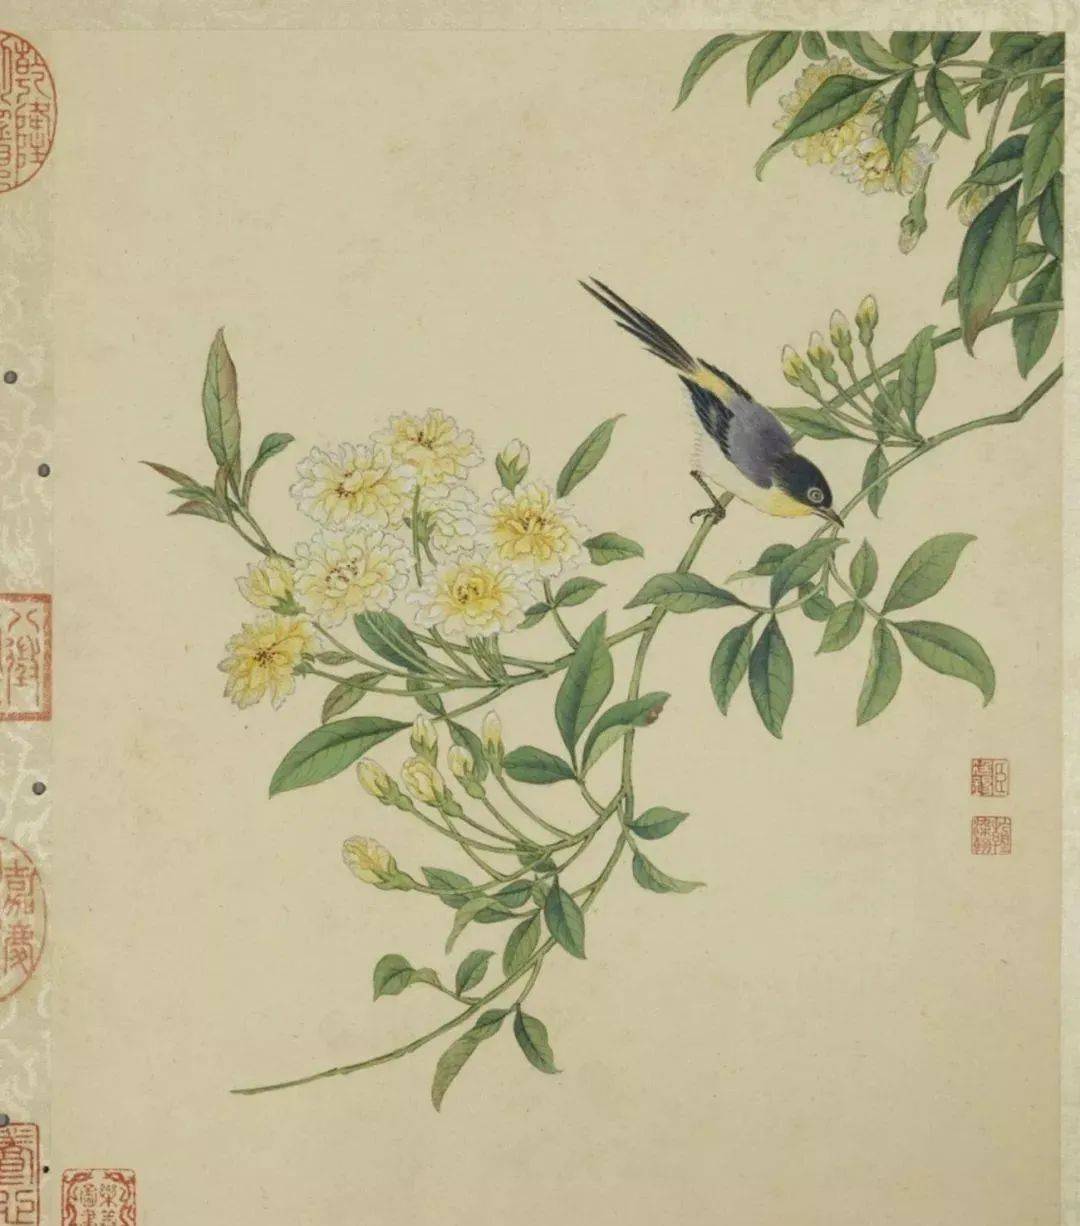 日本在庫掛軸　王素 （1794-1887年）　『画竹』　銘 落款 あり　52歳の作　清時代　中国の購入証明書付き　中国美術　中国掛軸 掛軸